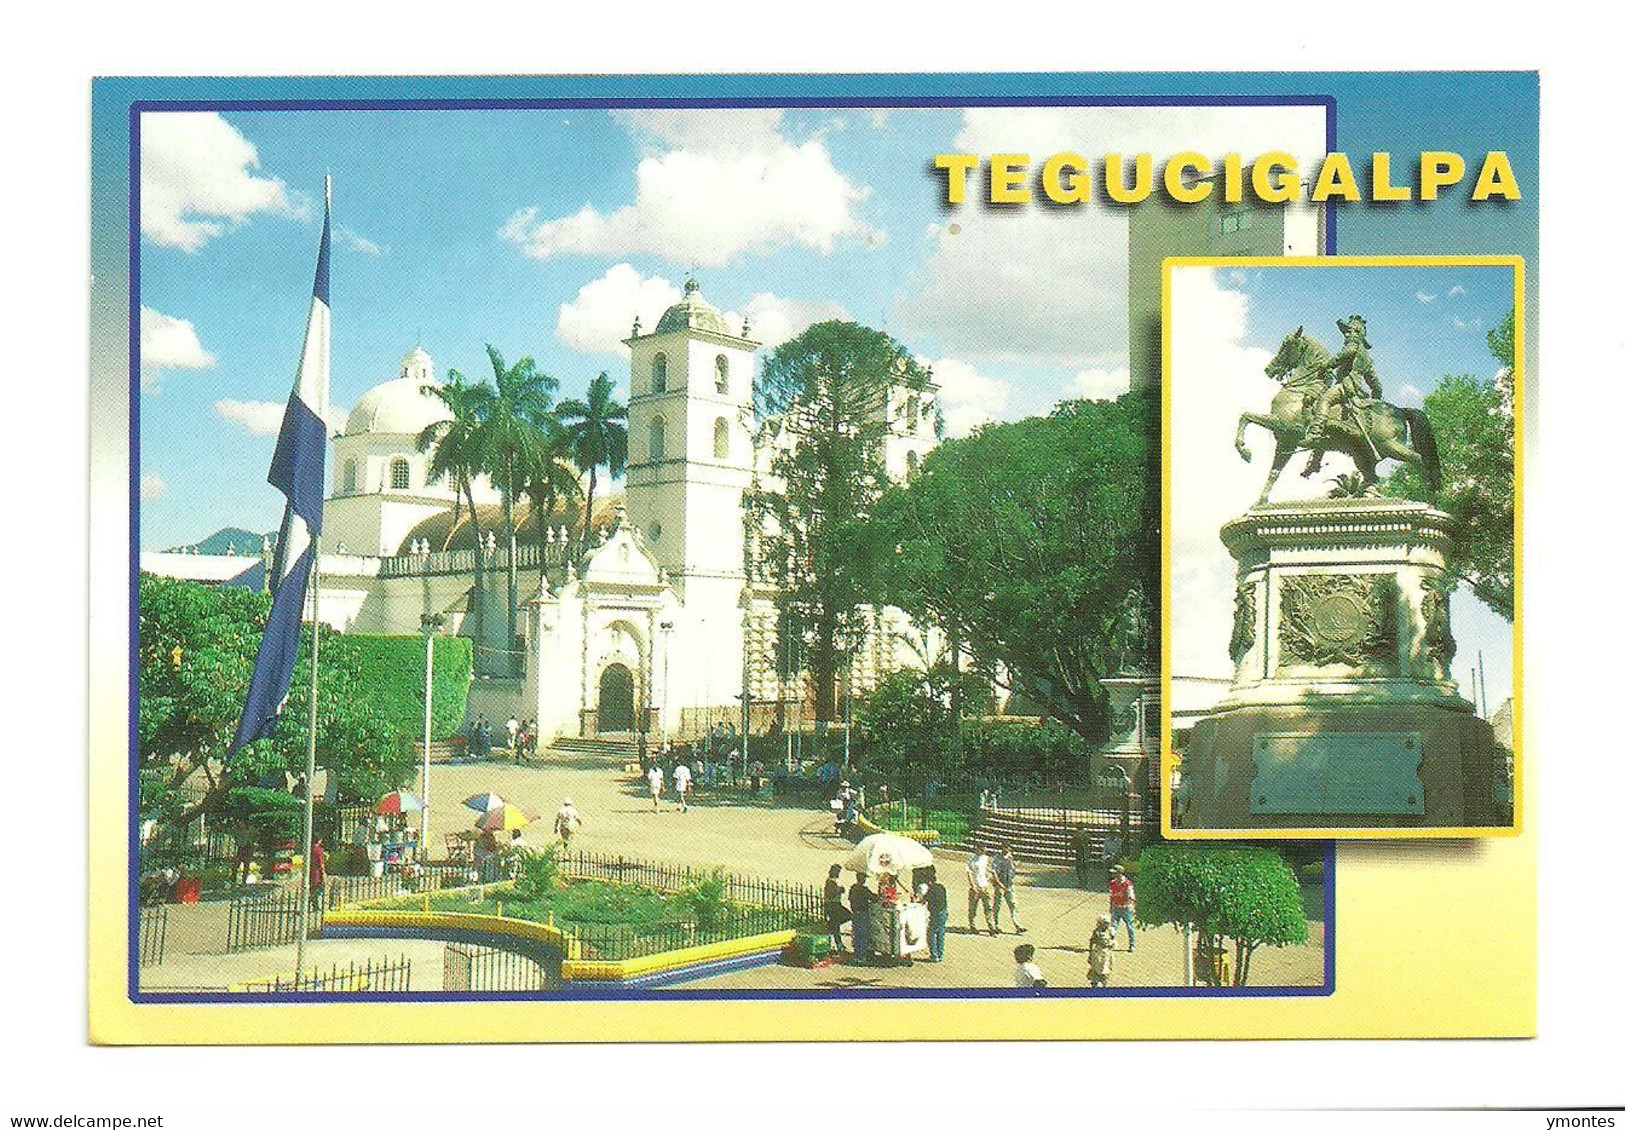 Circulated Danli To Tegucigalpa 2009 , Soccer Stamp - Honduras